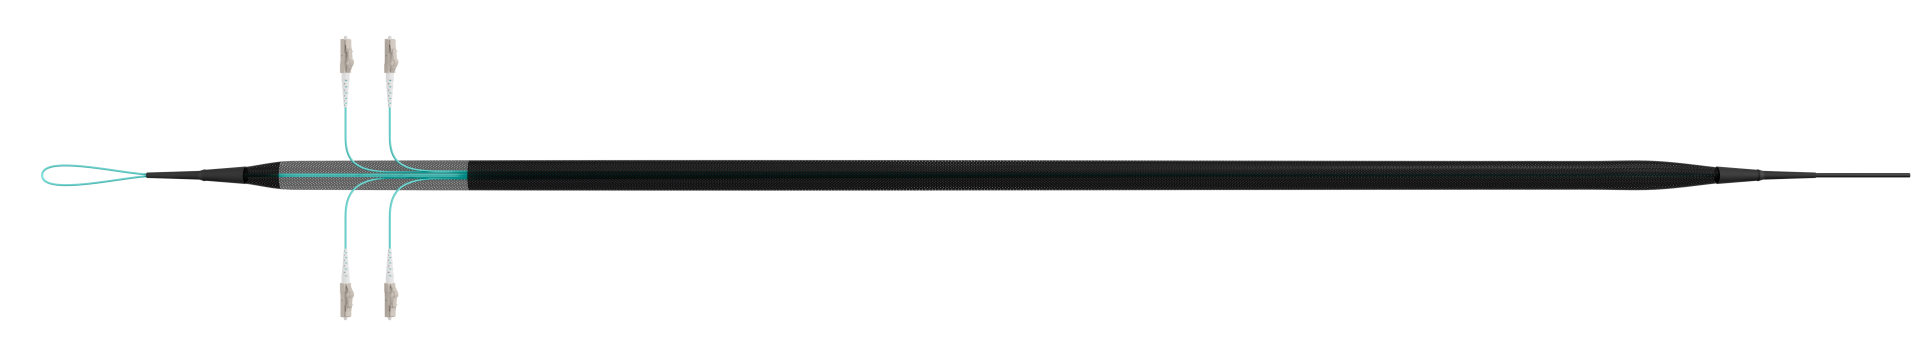 Trunk cable U-DQ(ZN)BH OM3 4G (1x4) LC-LC,60m Dca LSZH